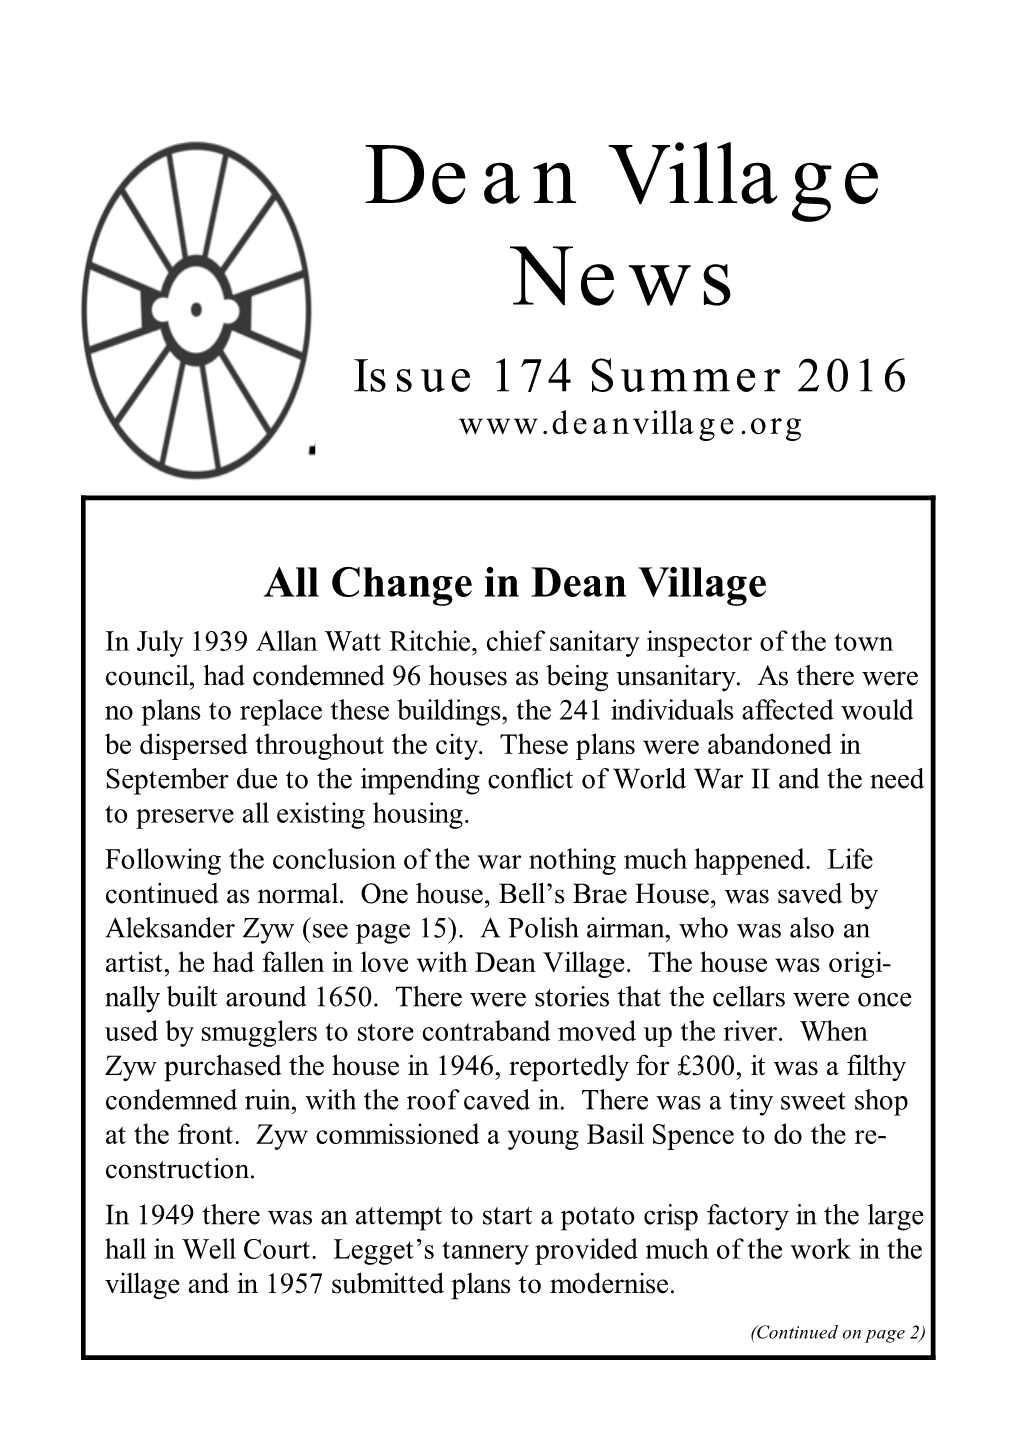 Dean Village News Issue 174 Summer 2016